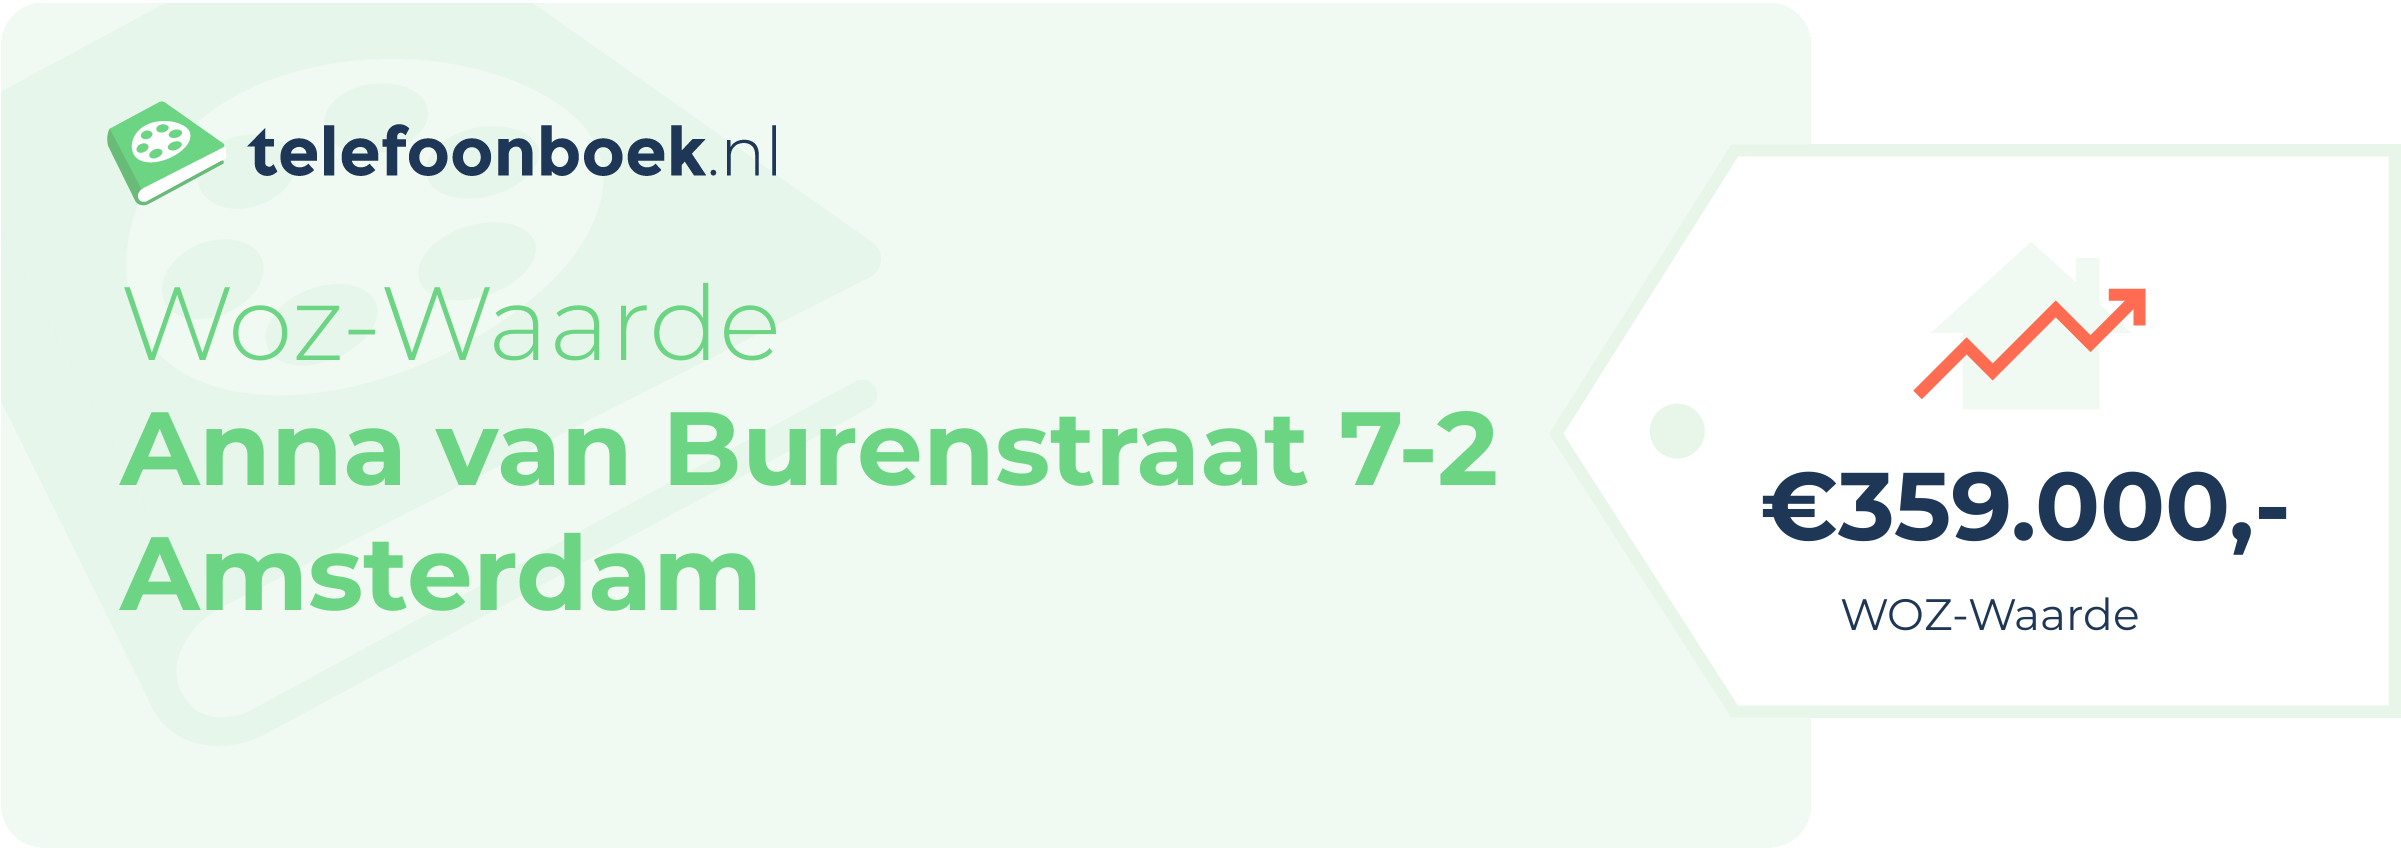 WOZ-waarde Anna Van Burenstraat 7-2 Amsterdam